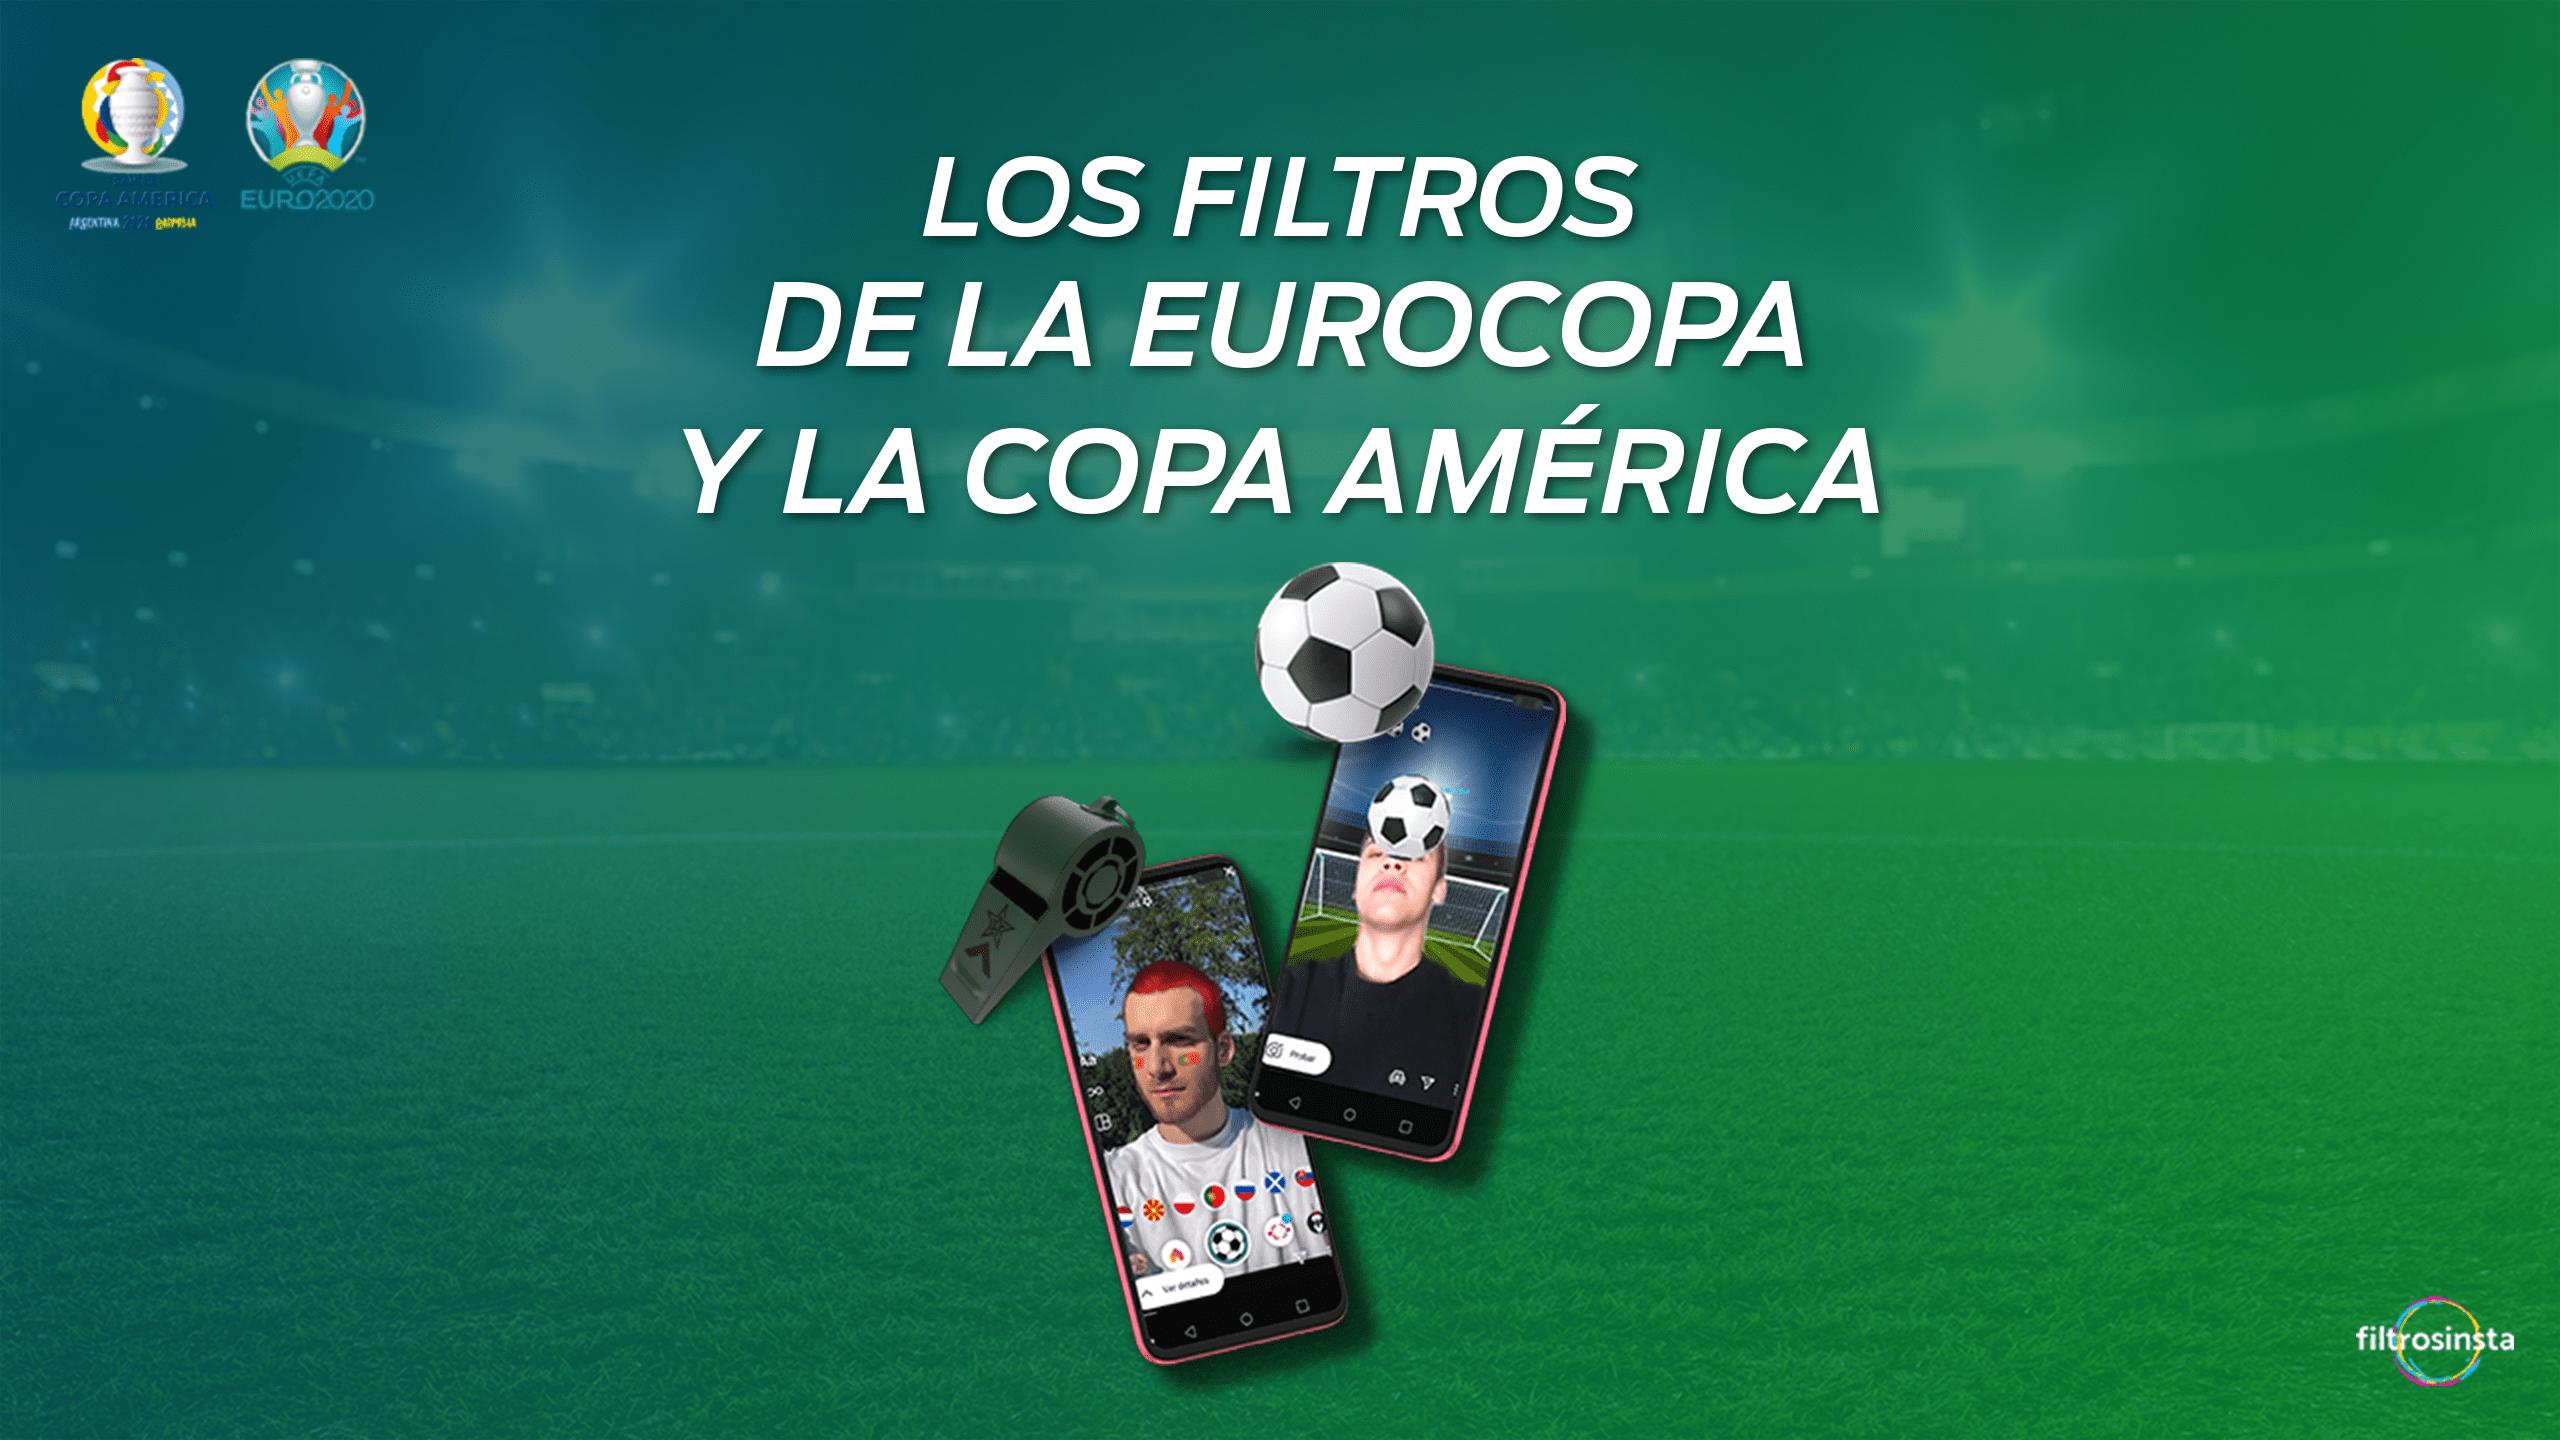 Los mejores filtros de la Eurocopa y la Copa América